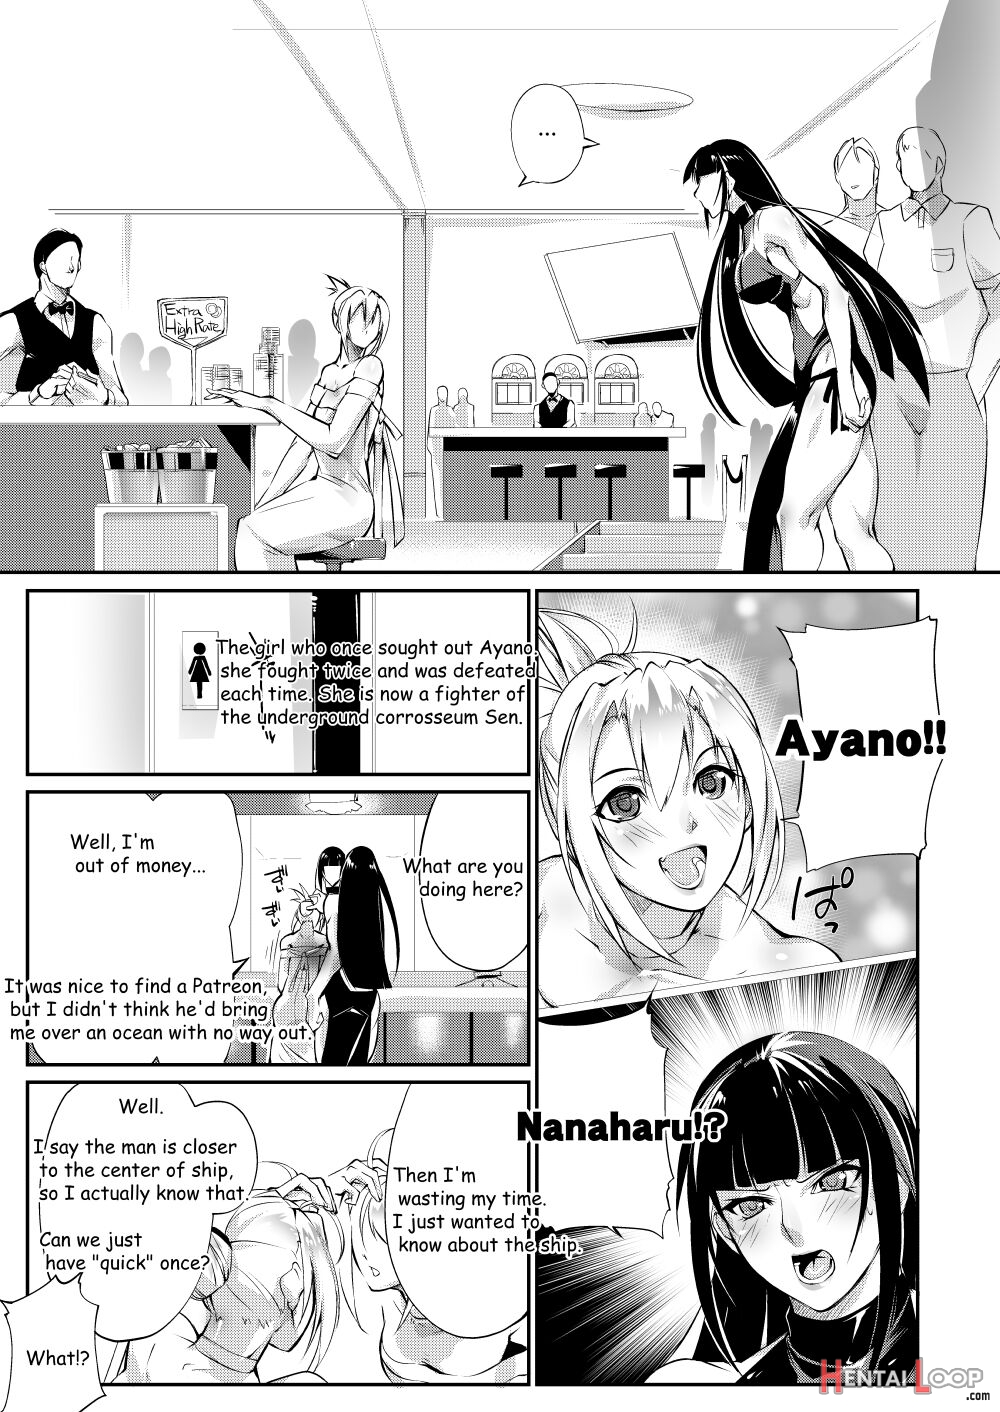 Tougijou Rin - Arena Rin 2 page 6